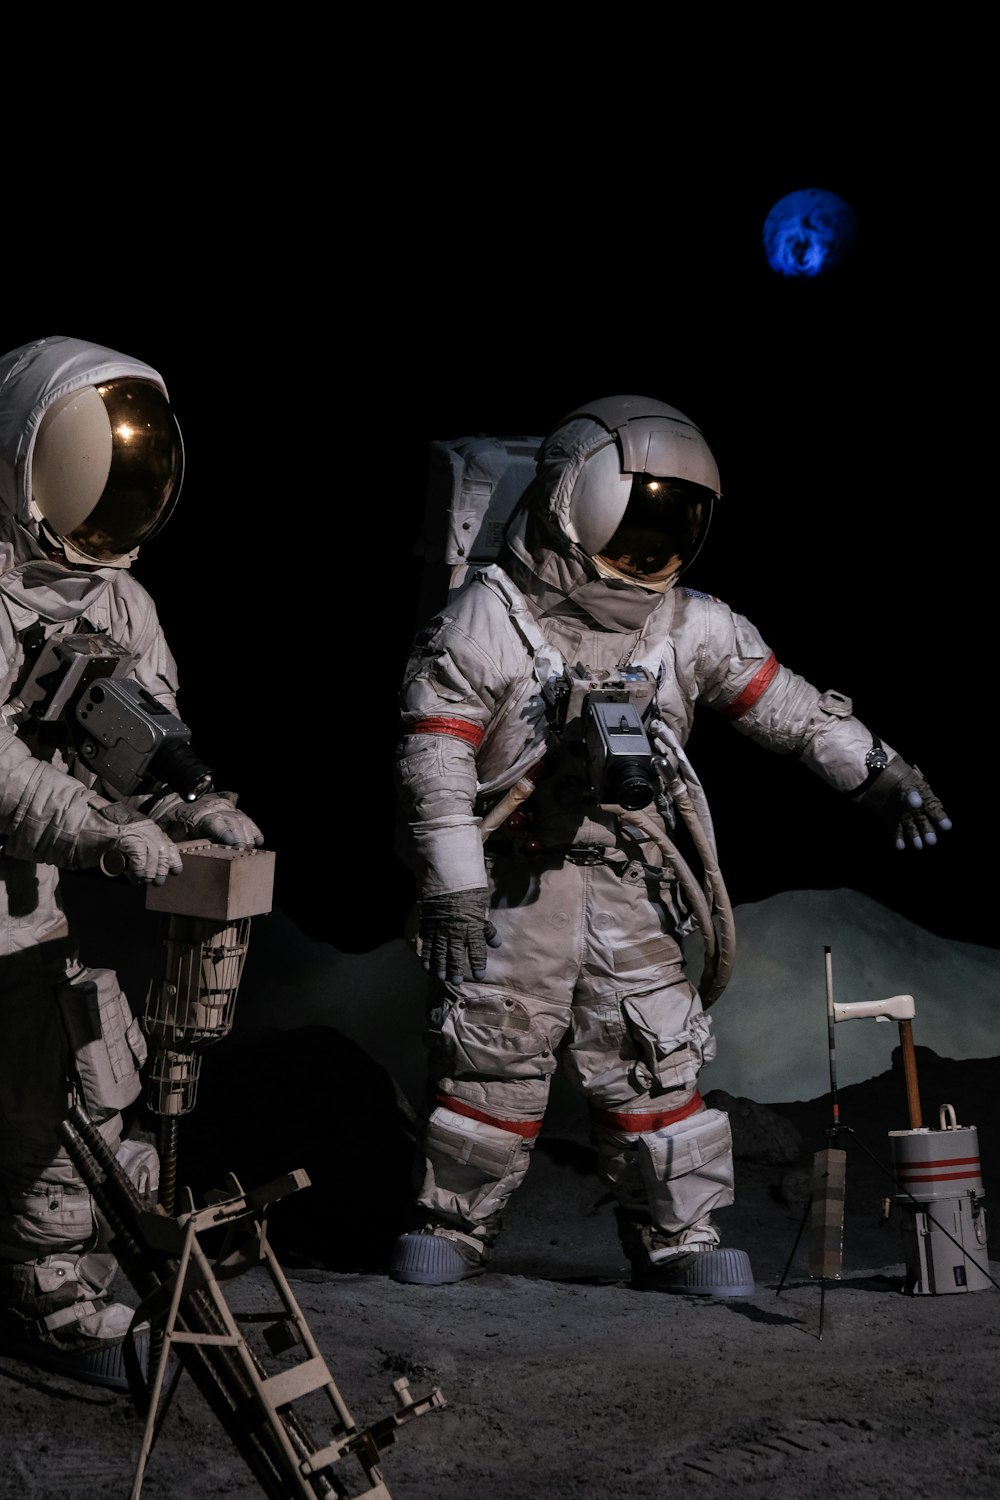 Dos astronautas parados en la superficie de la luna